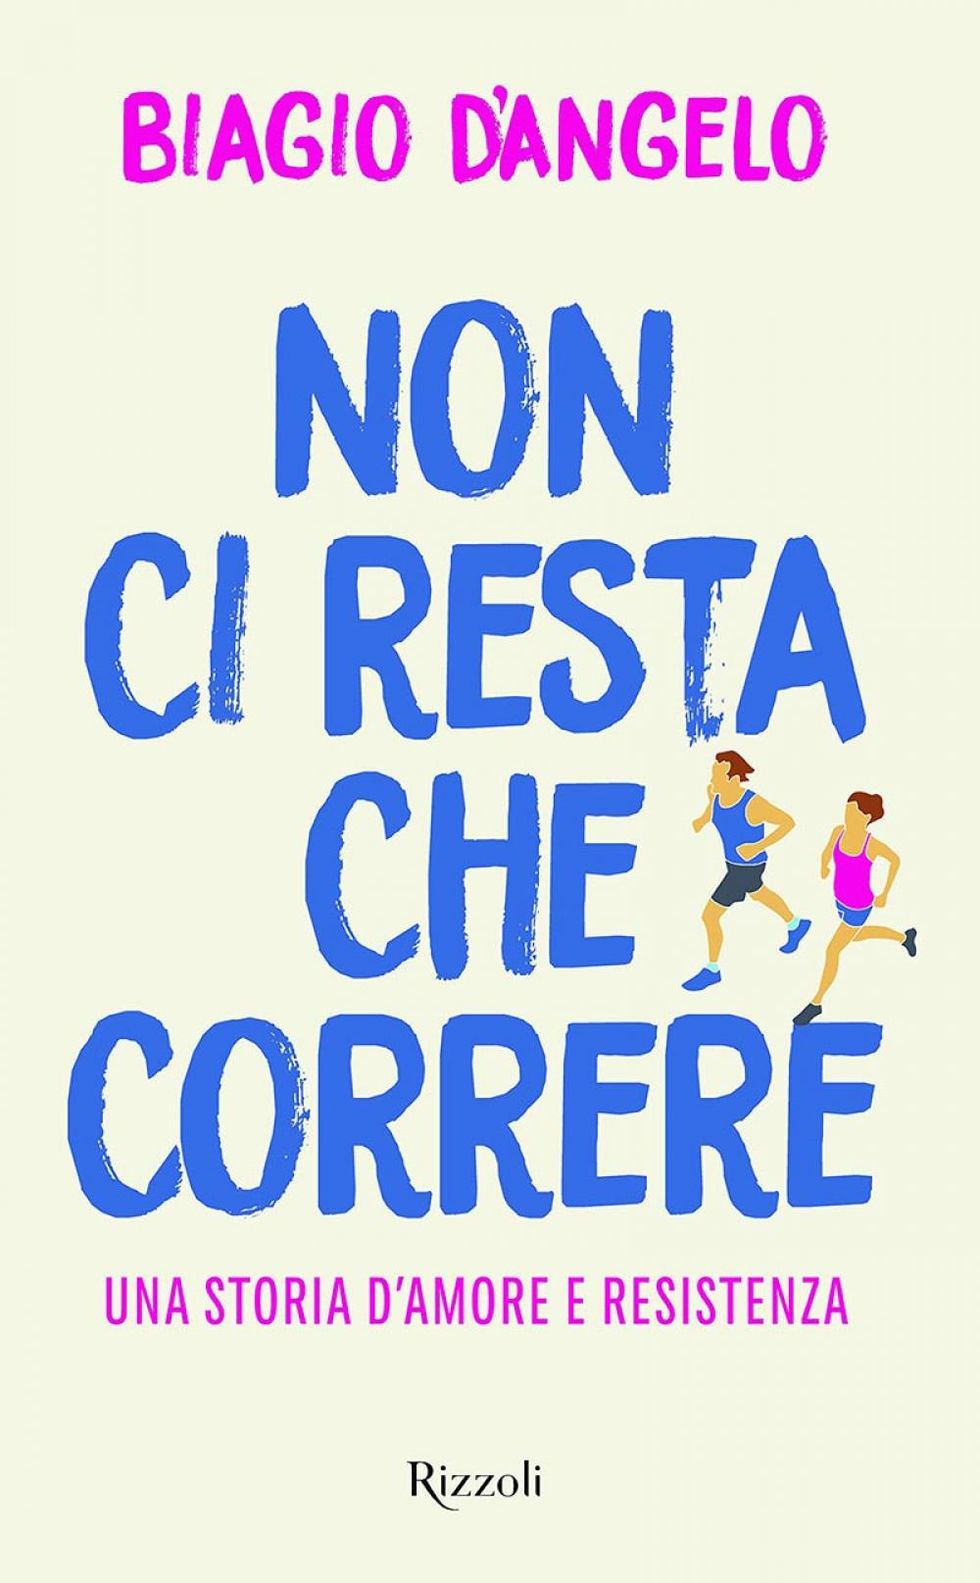 La copertina di "Non ci resta che correre, una storia d’amore e resistenza", di Biagio D’angelo ed. Rizzoli